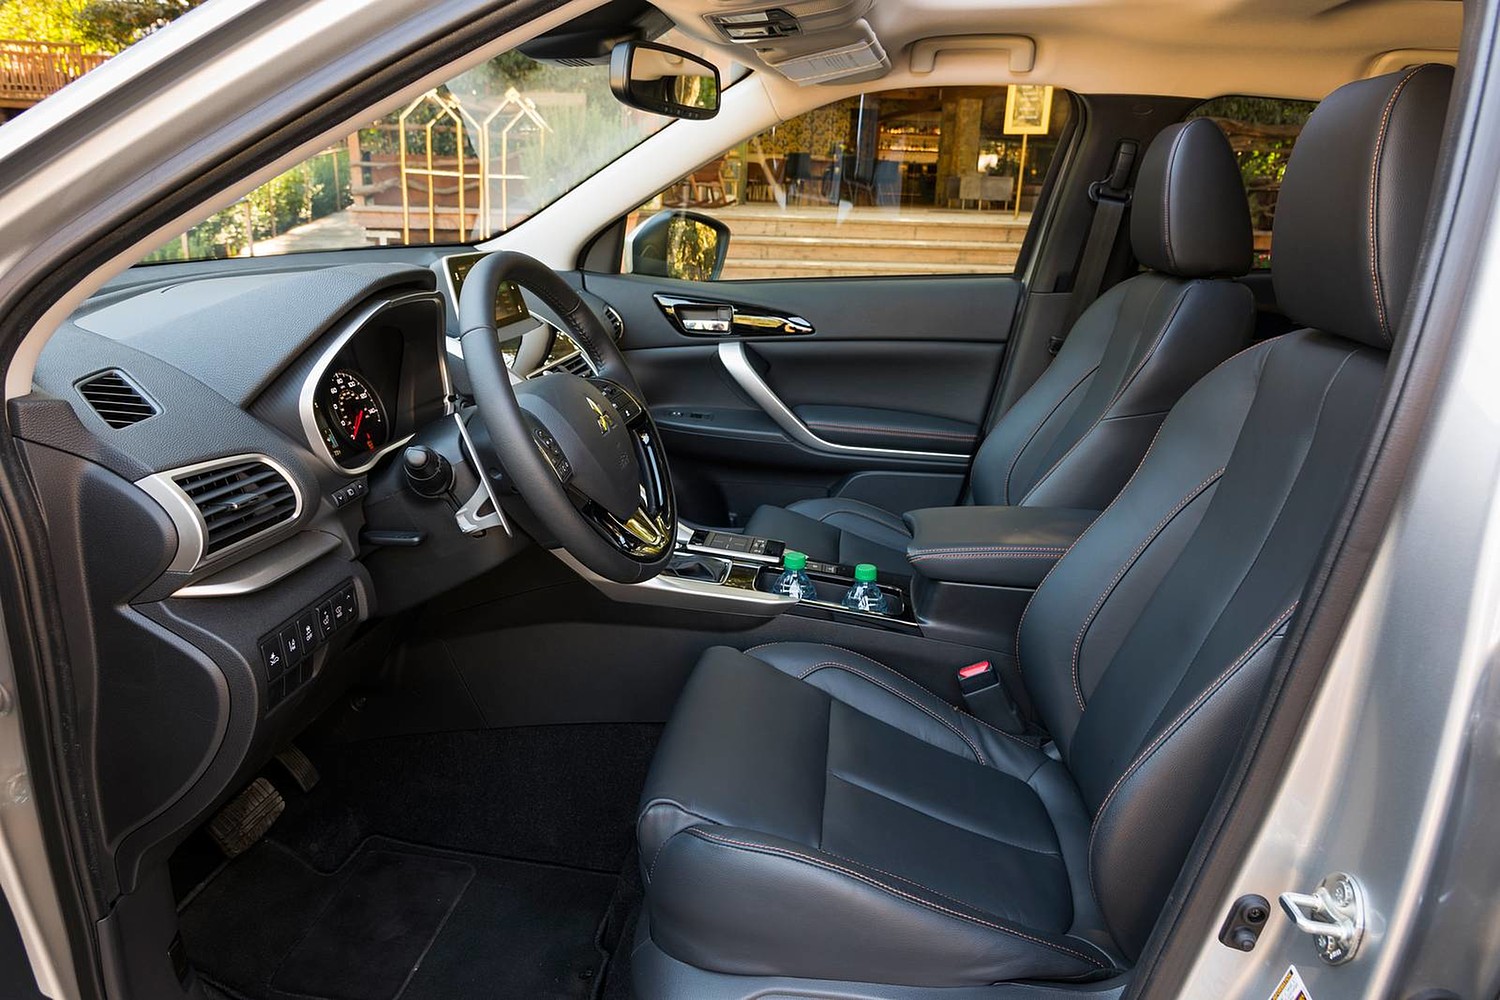 2018 Mitsubishi Eclipse Cross SEL Touring 4dr SUV Interior Shown